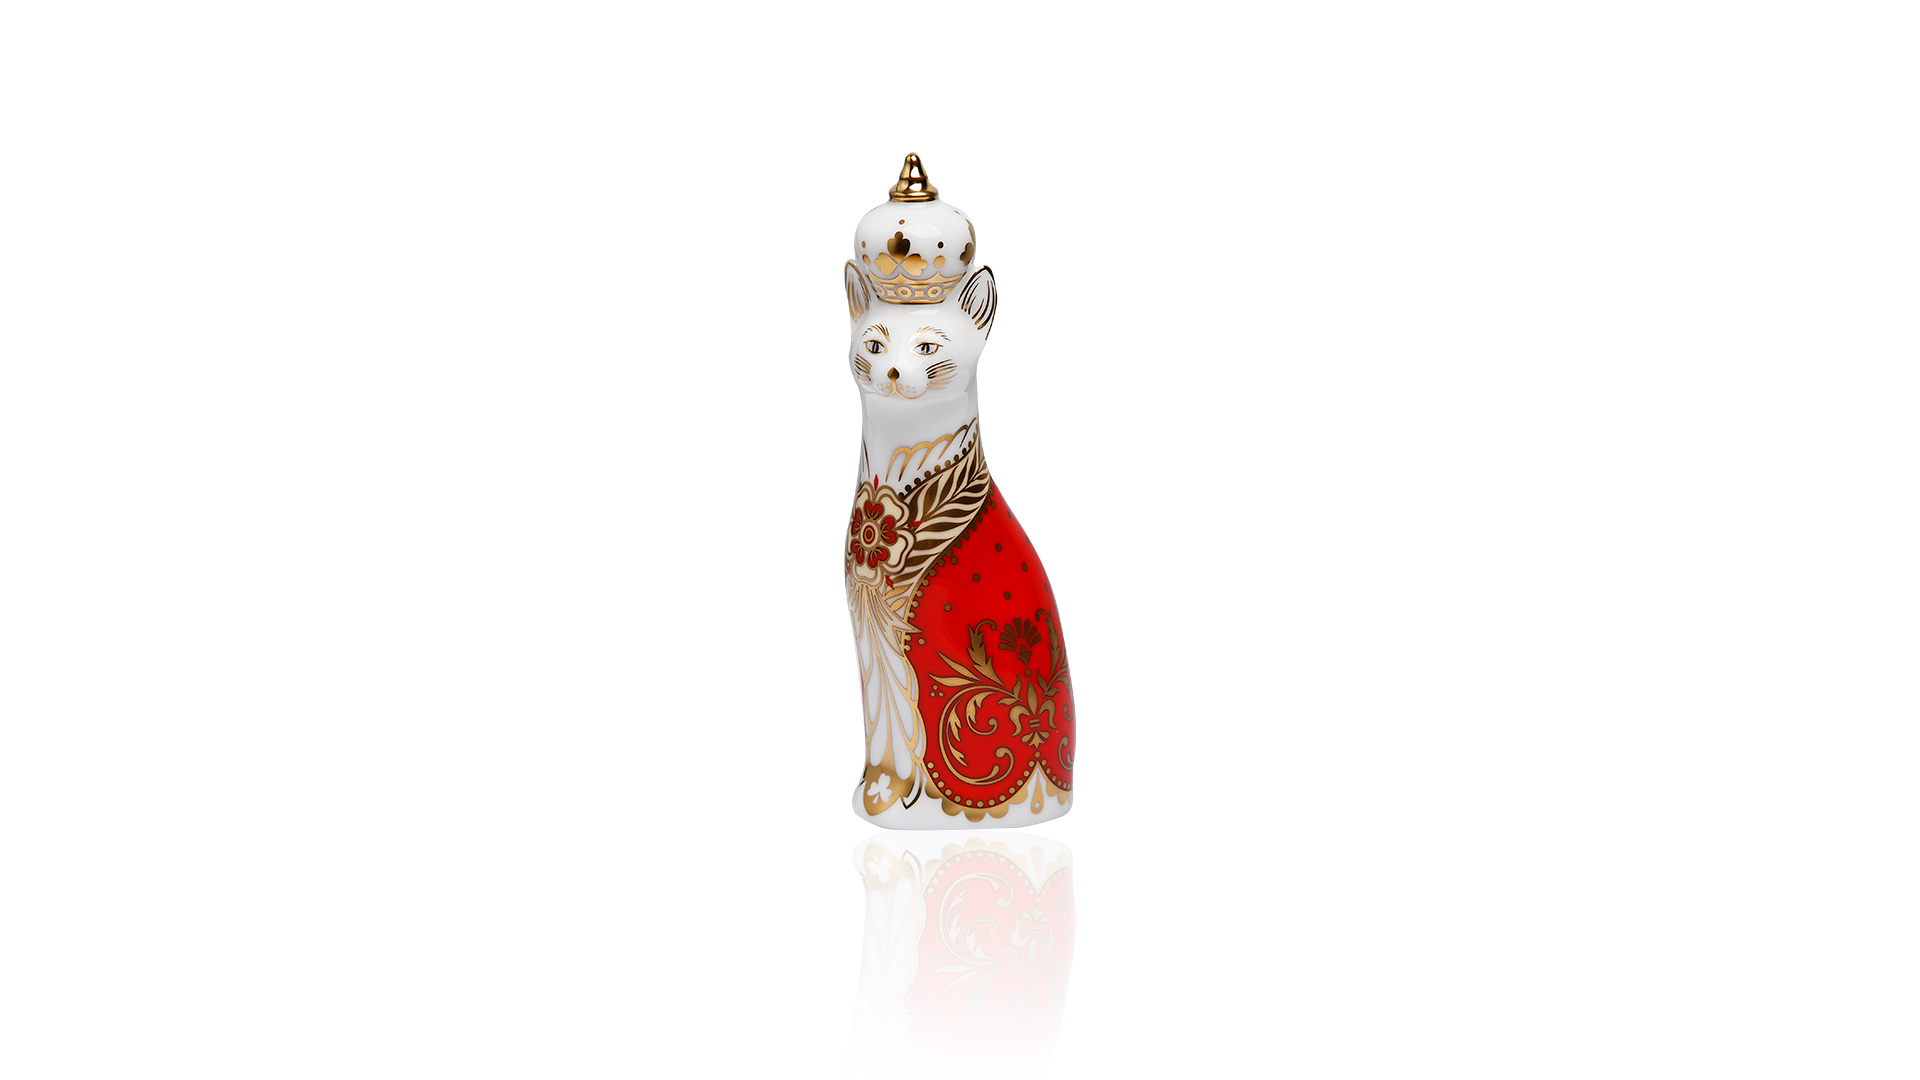 Пресс-папье Royal Crown Derby Королевский котенок-девочка 16см (лим.вып. 450)